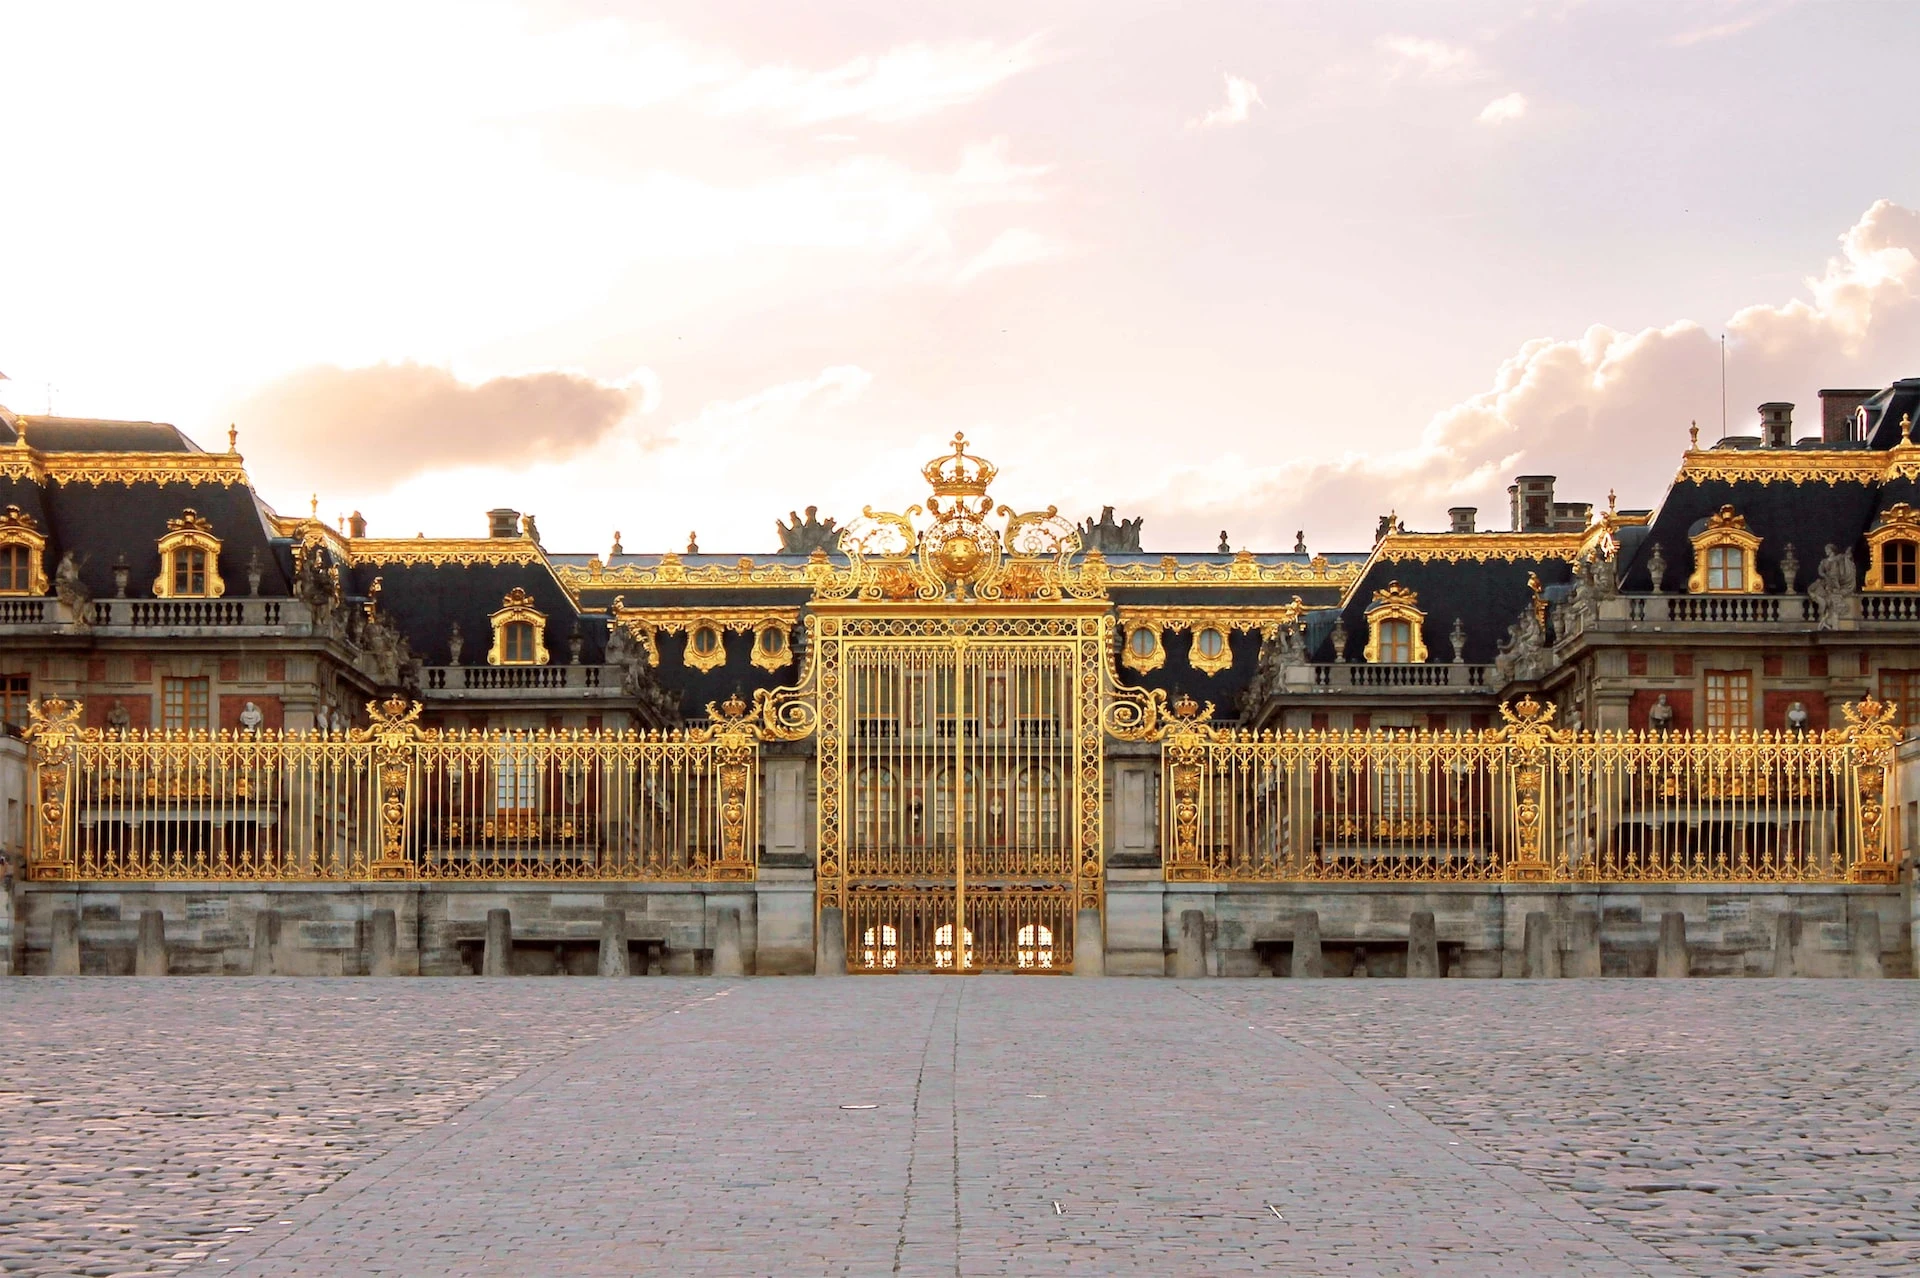 The Château de Versailles is an Olympic venue PARIS 2024 / Photo chosen by monsieurdefrance.com: jessica-kantak-bailey via unsplash.com